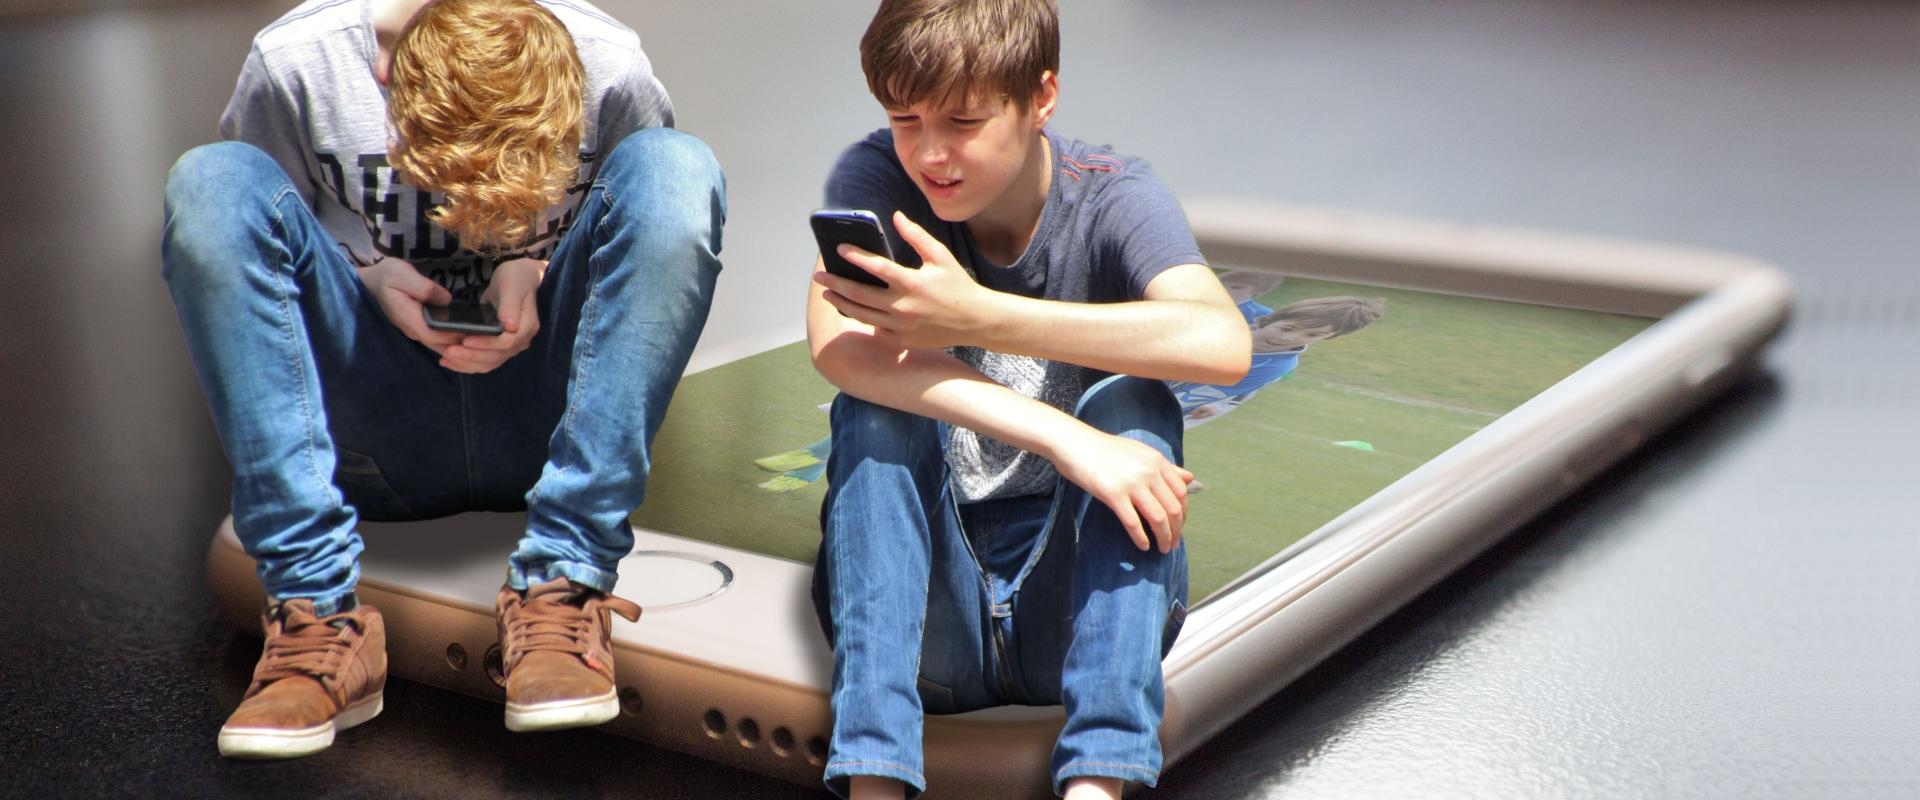 ©Pixabay.Zwei sitzende Teenager mit Smartphones